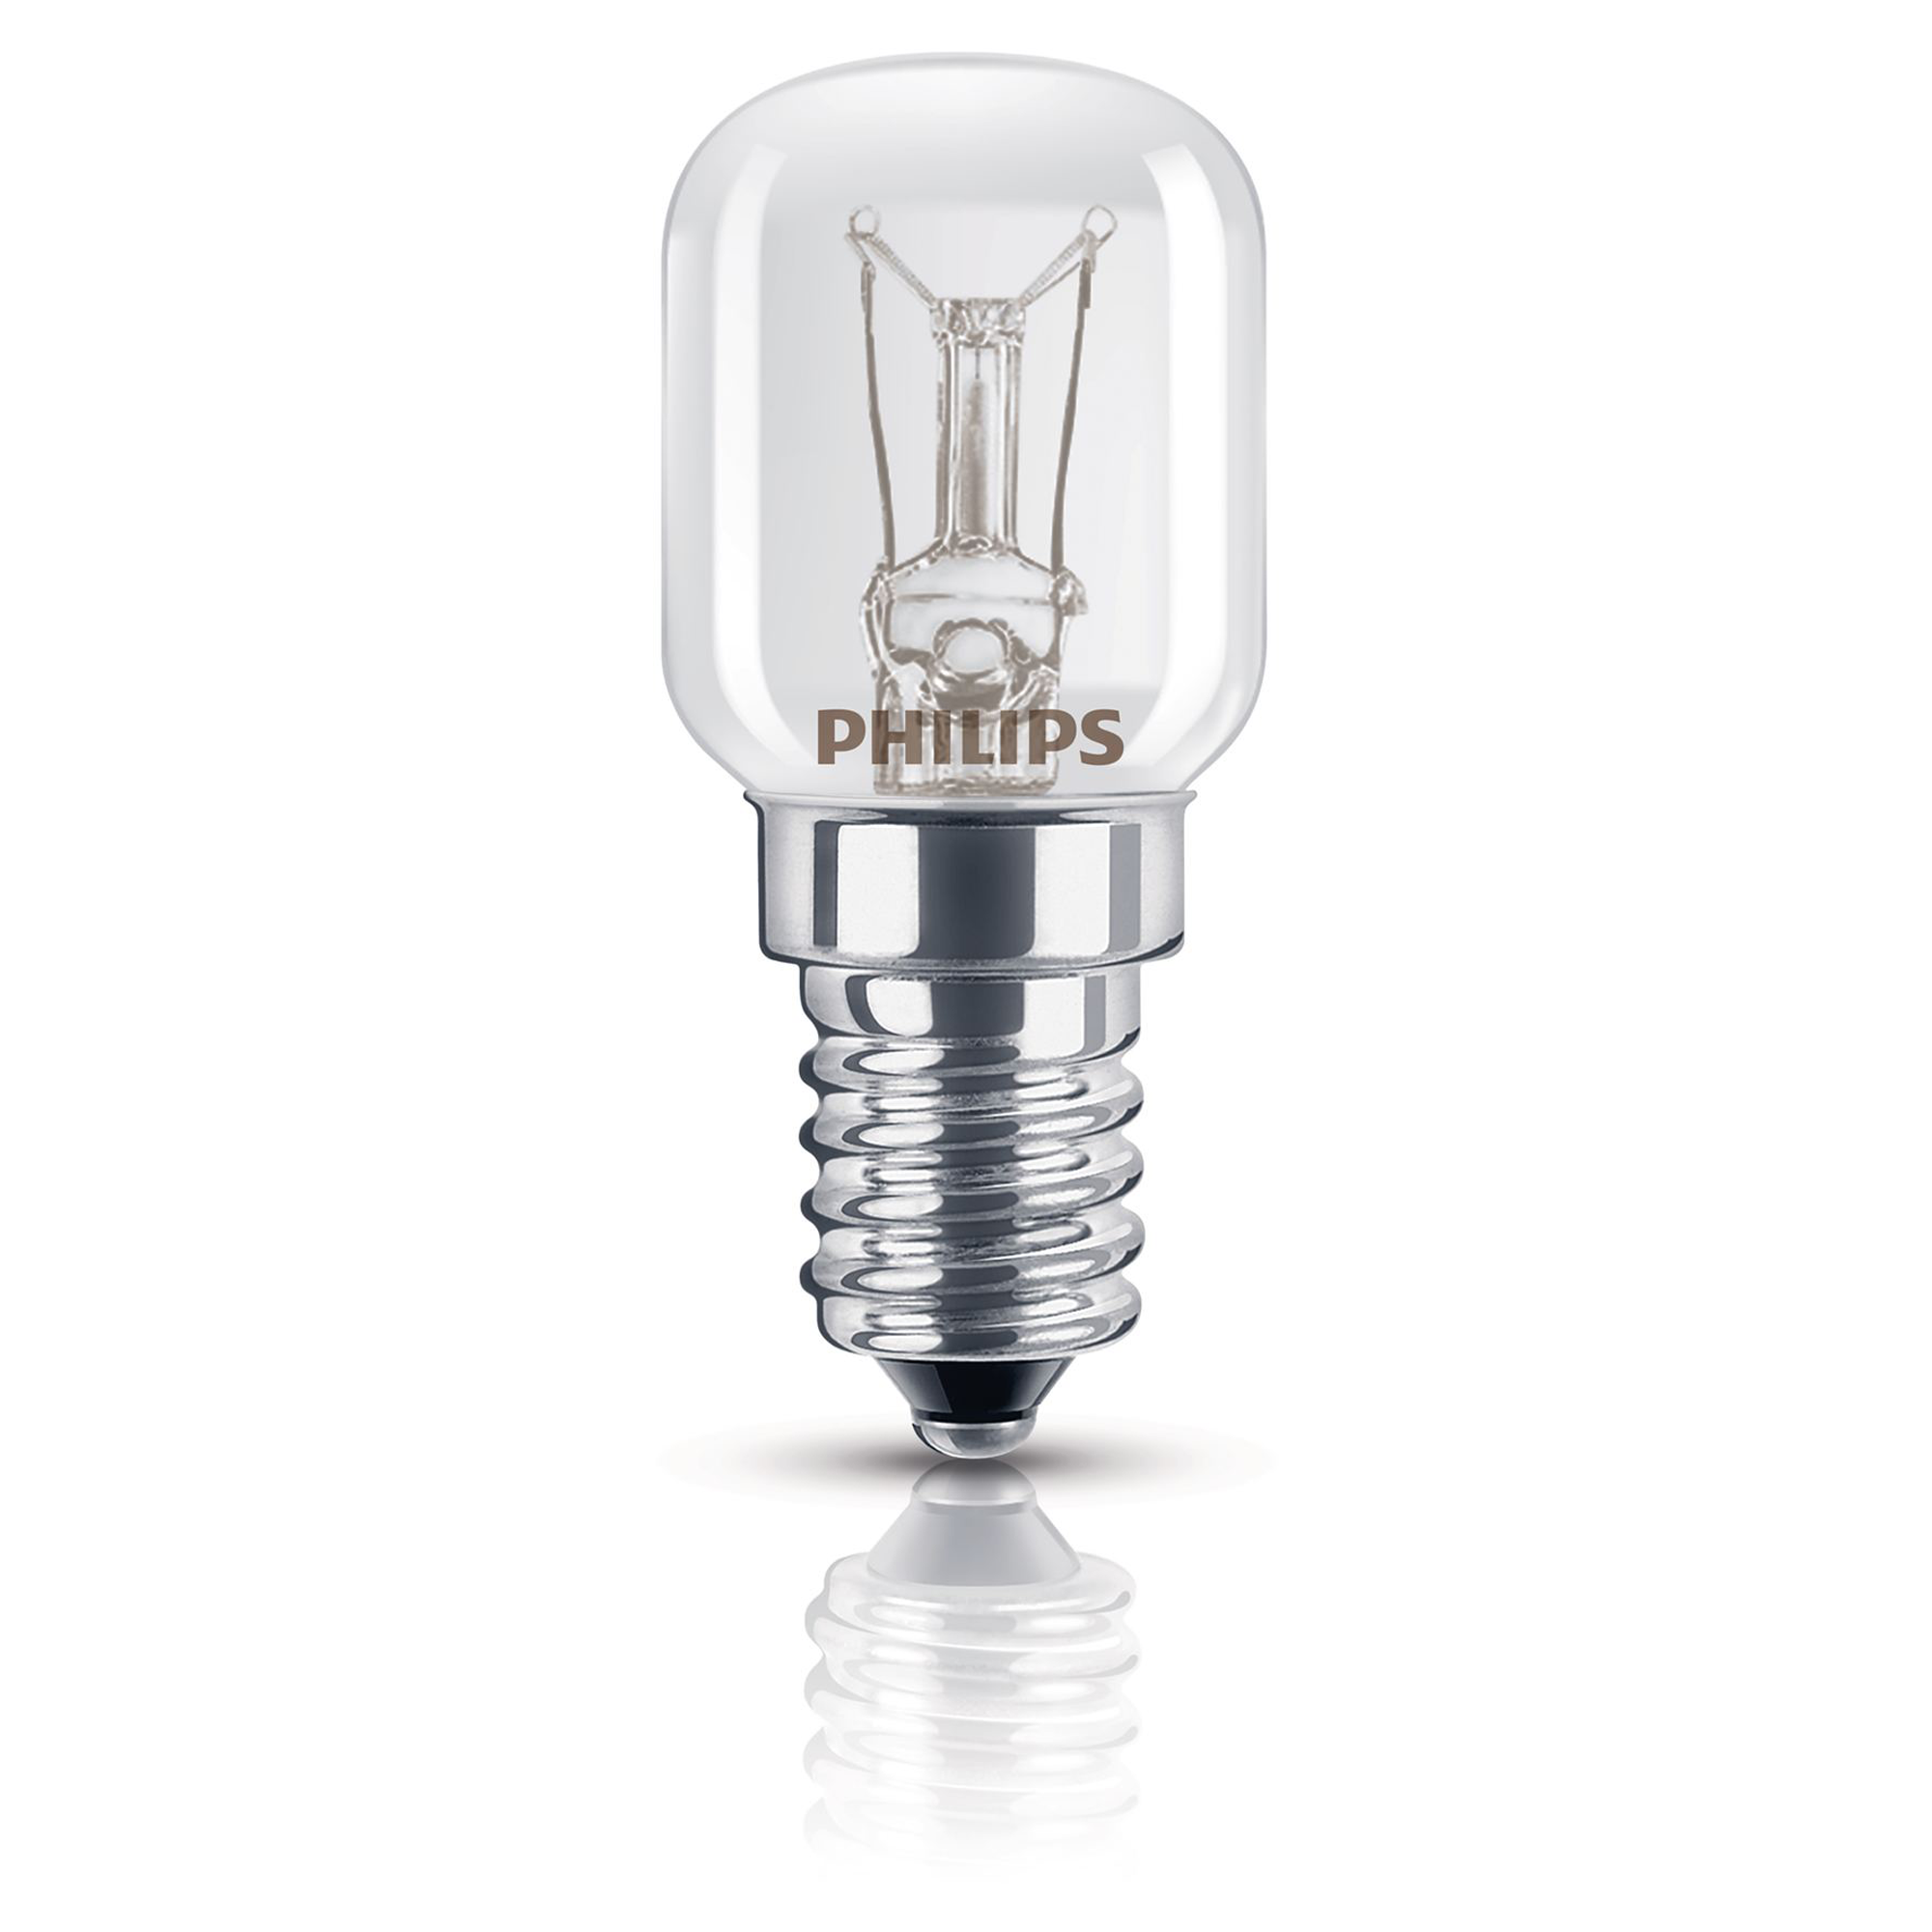 Beaupretty E14 Kleine Glühlampe 2700K Warmweiß 25 W Backofenlampe für bis zu 300 Grad 4 Stück/Packung für Mikrowelle Backofen 